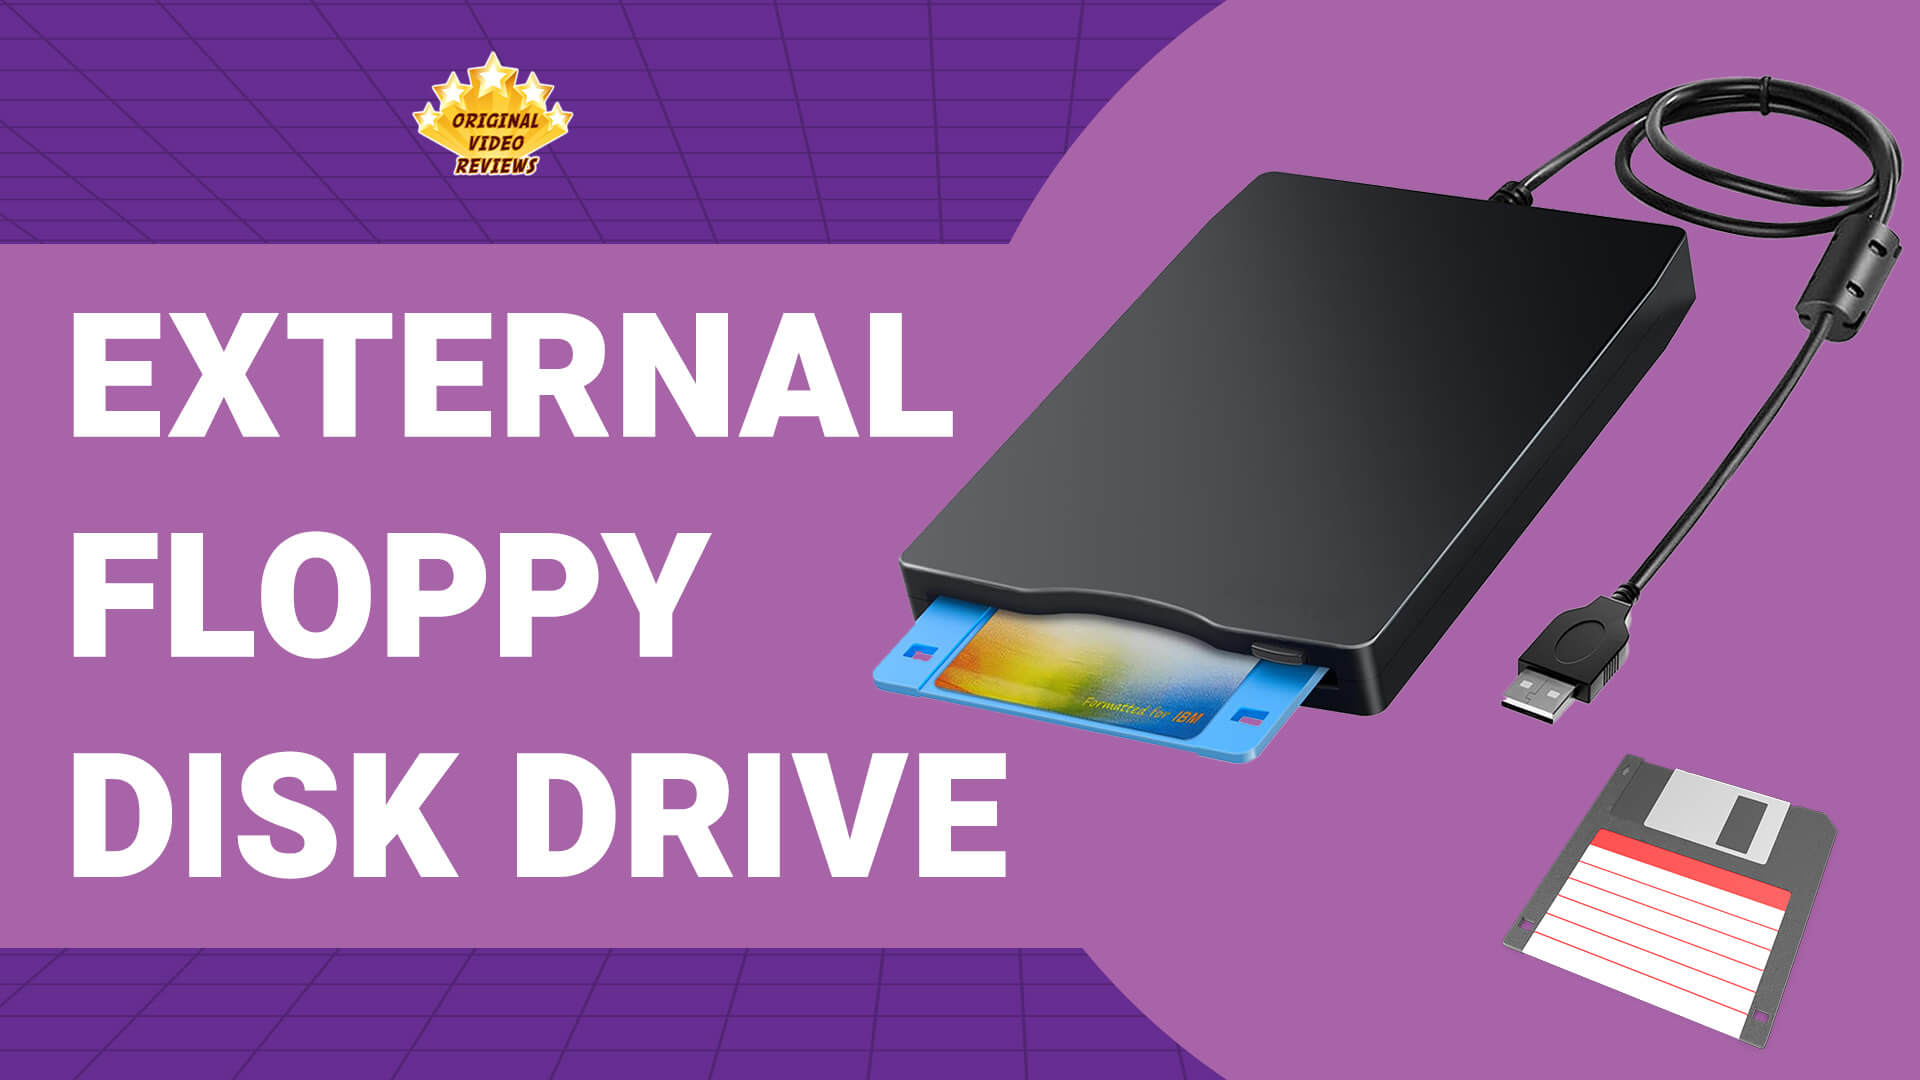 USB External 3.5 Floppy Disk Drive